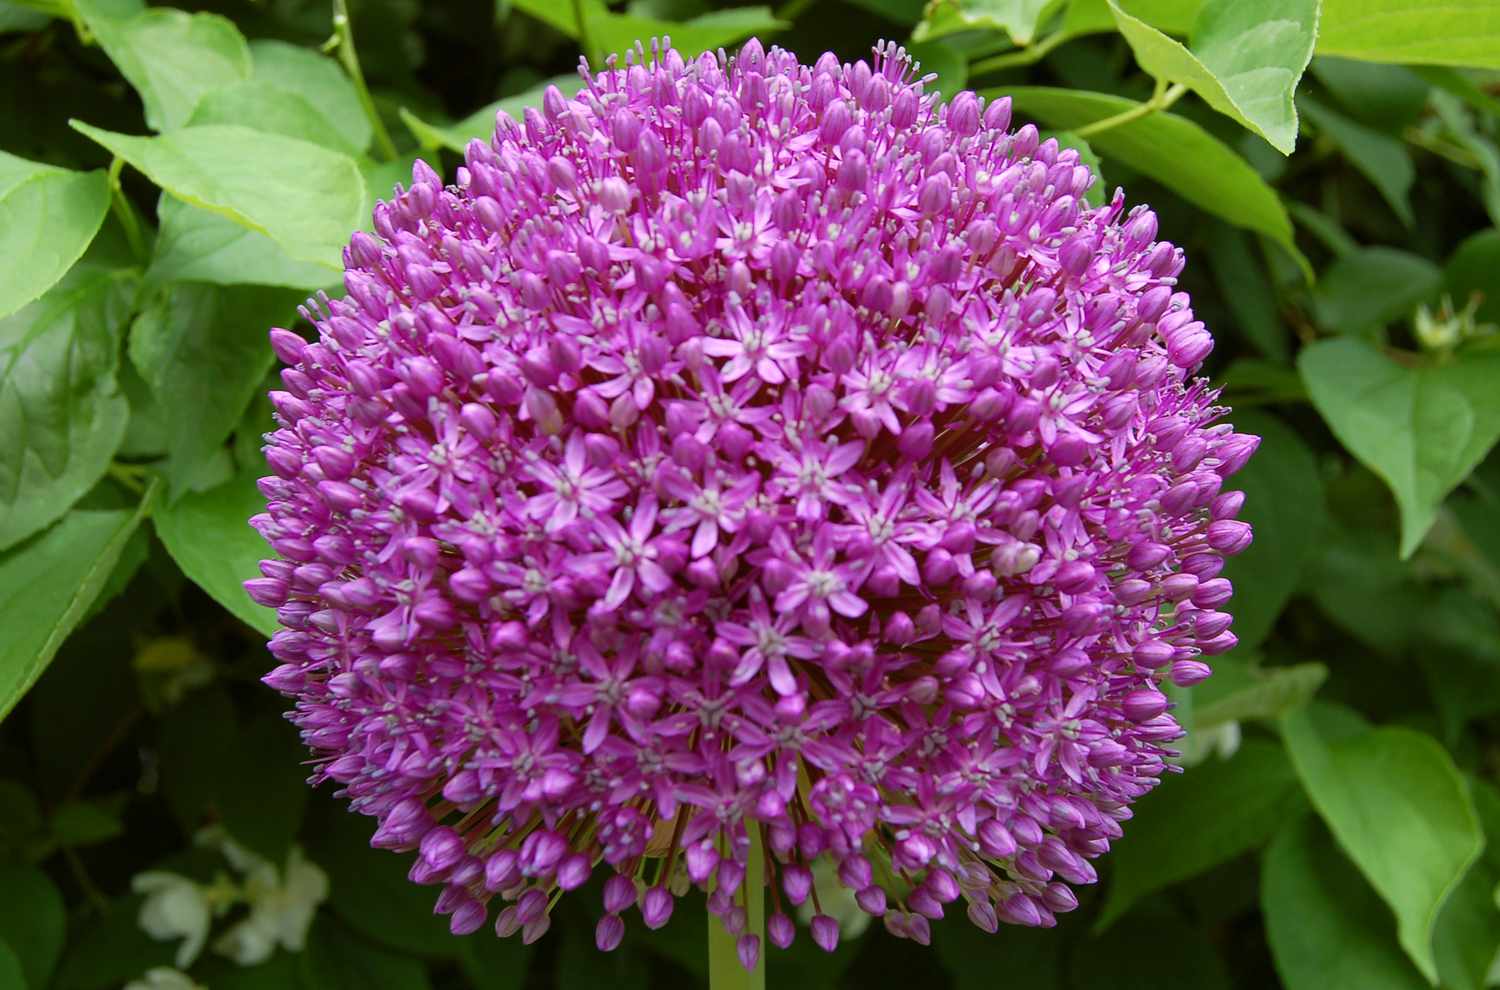 'Ambassador' Allium mit violetten Blüten